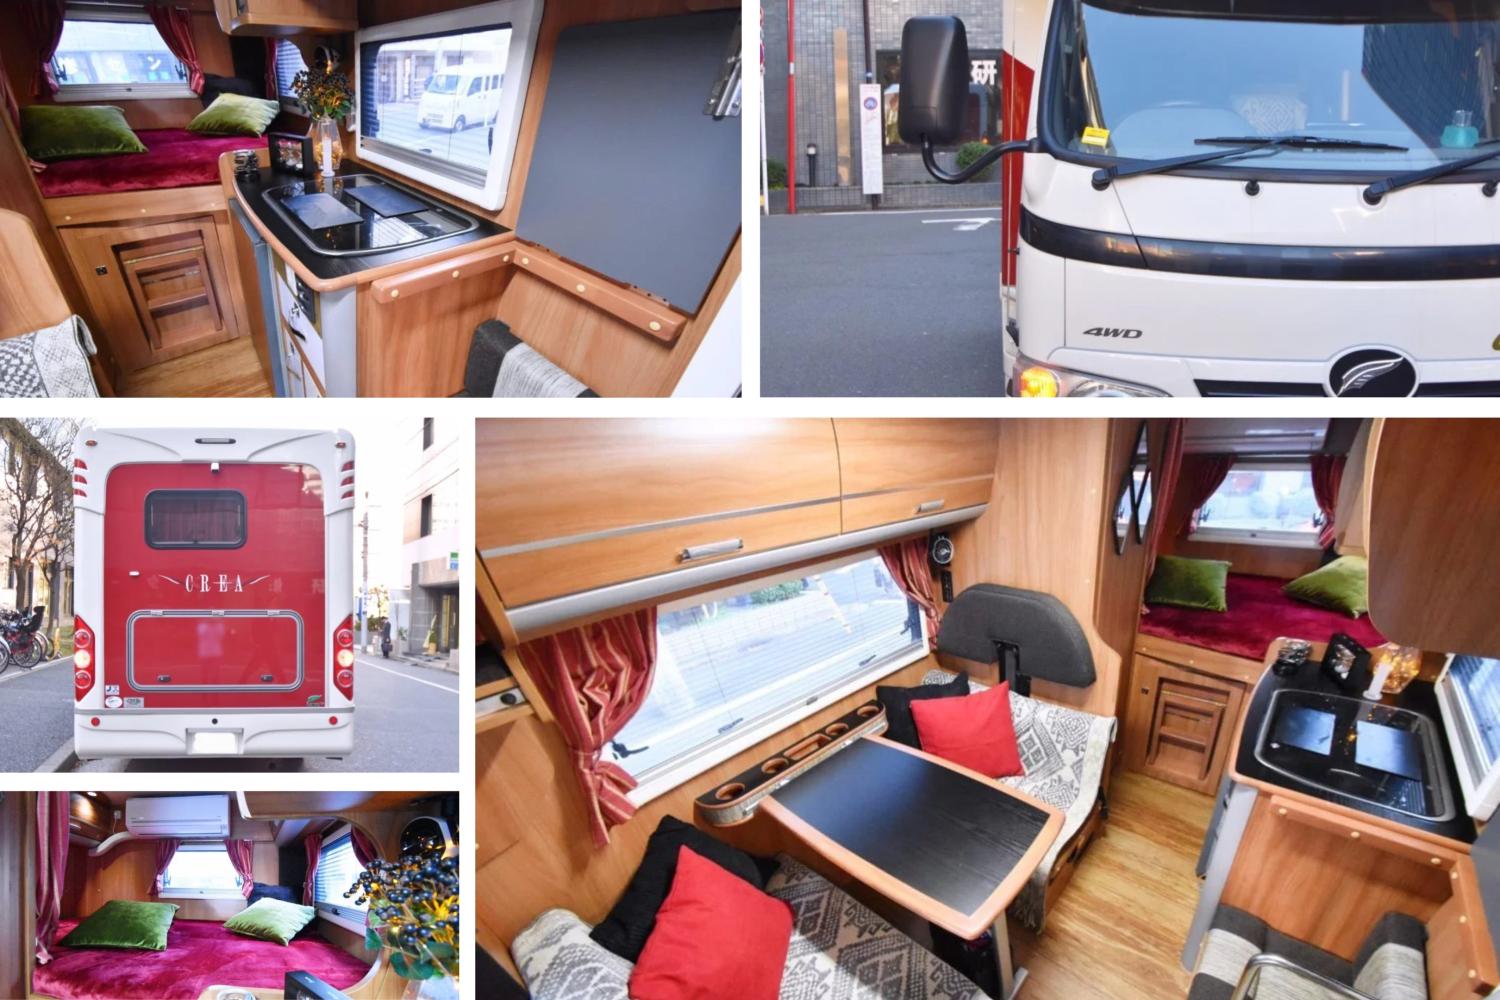 【Tokyo】Japan 6ppl RV Caravan 24 hours Rental Experience(JOHR)